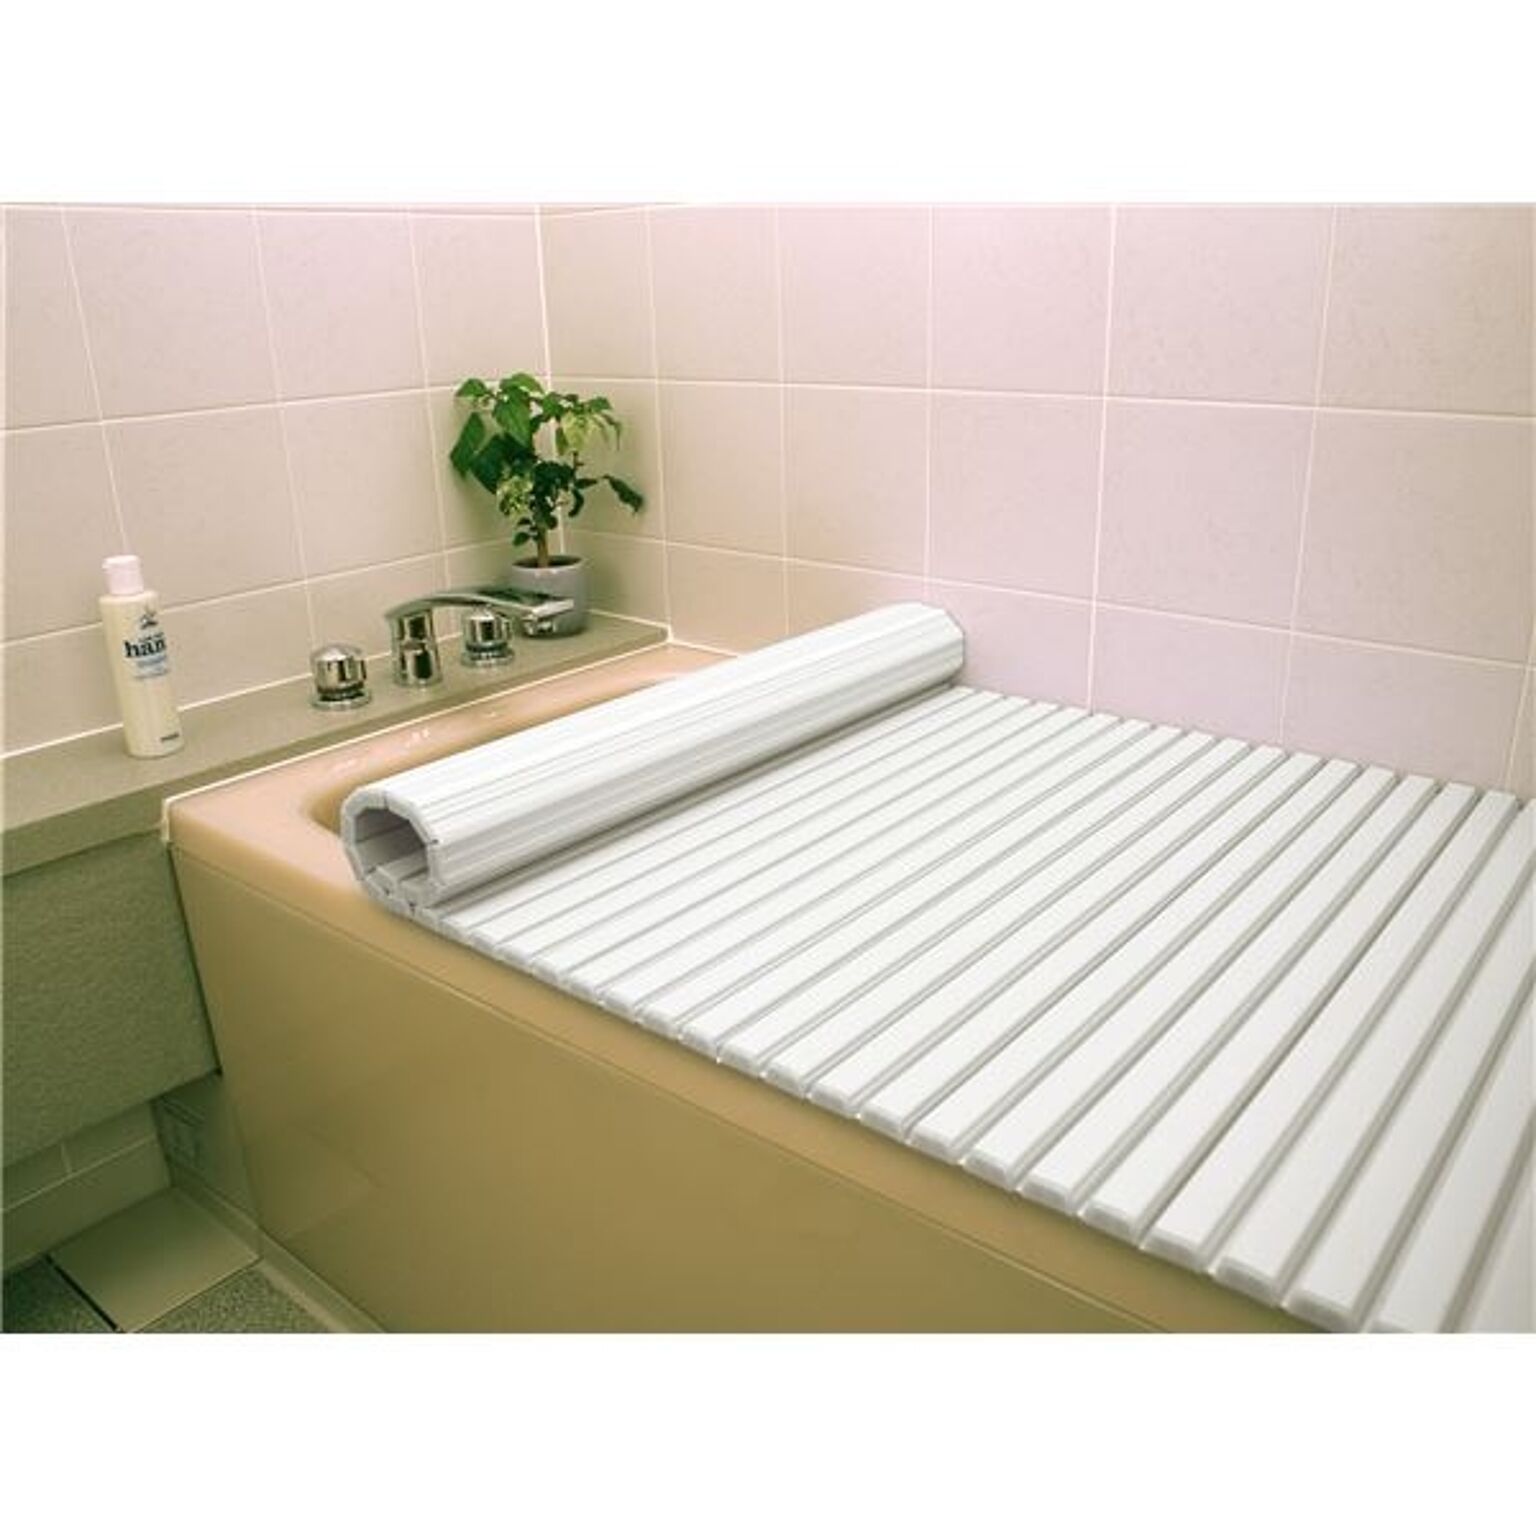 〔6個セット〕 風呂ふた 風呂フタ 80cm×160cm用 ホワイト 軽量 シャッター式 巻きフタ SGマーク認定 日本製 浴室 風呂